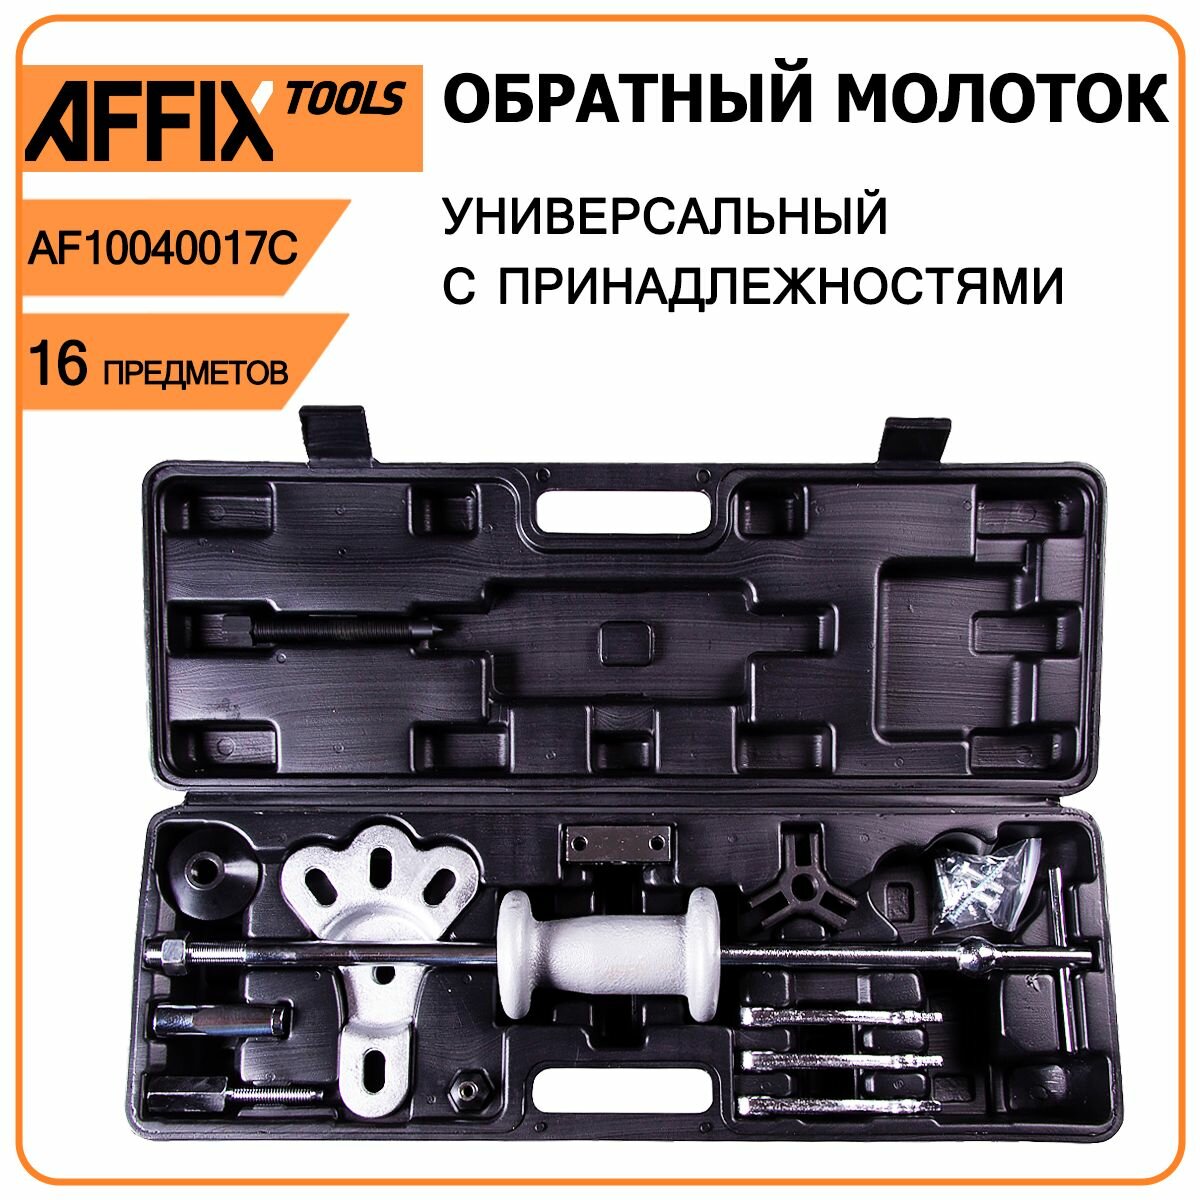 Обратный молоток универсальный AFFIX AF10040017C - чугунный молот 2 кг, 16 предметов, пластиковый кейс